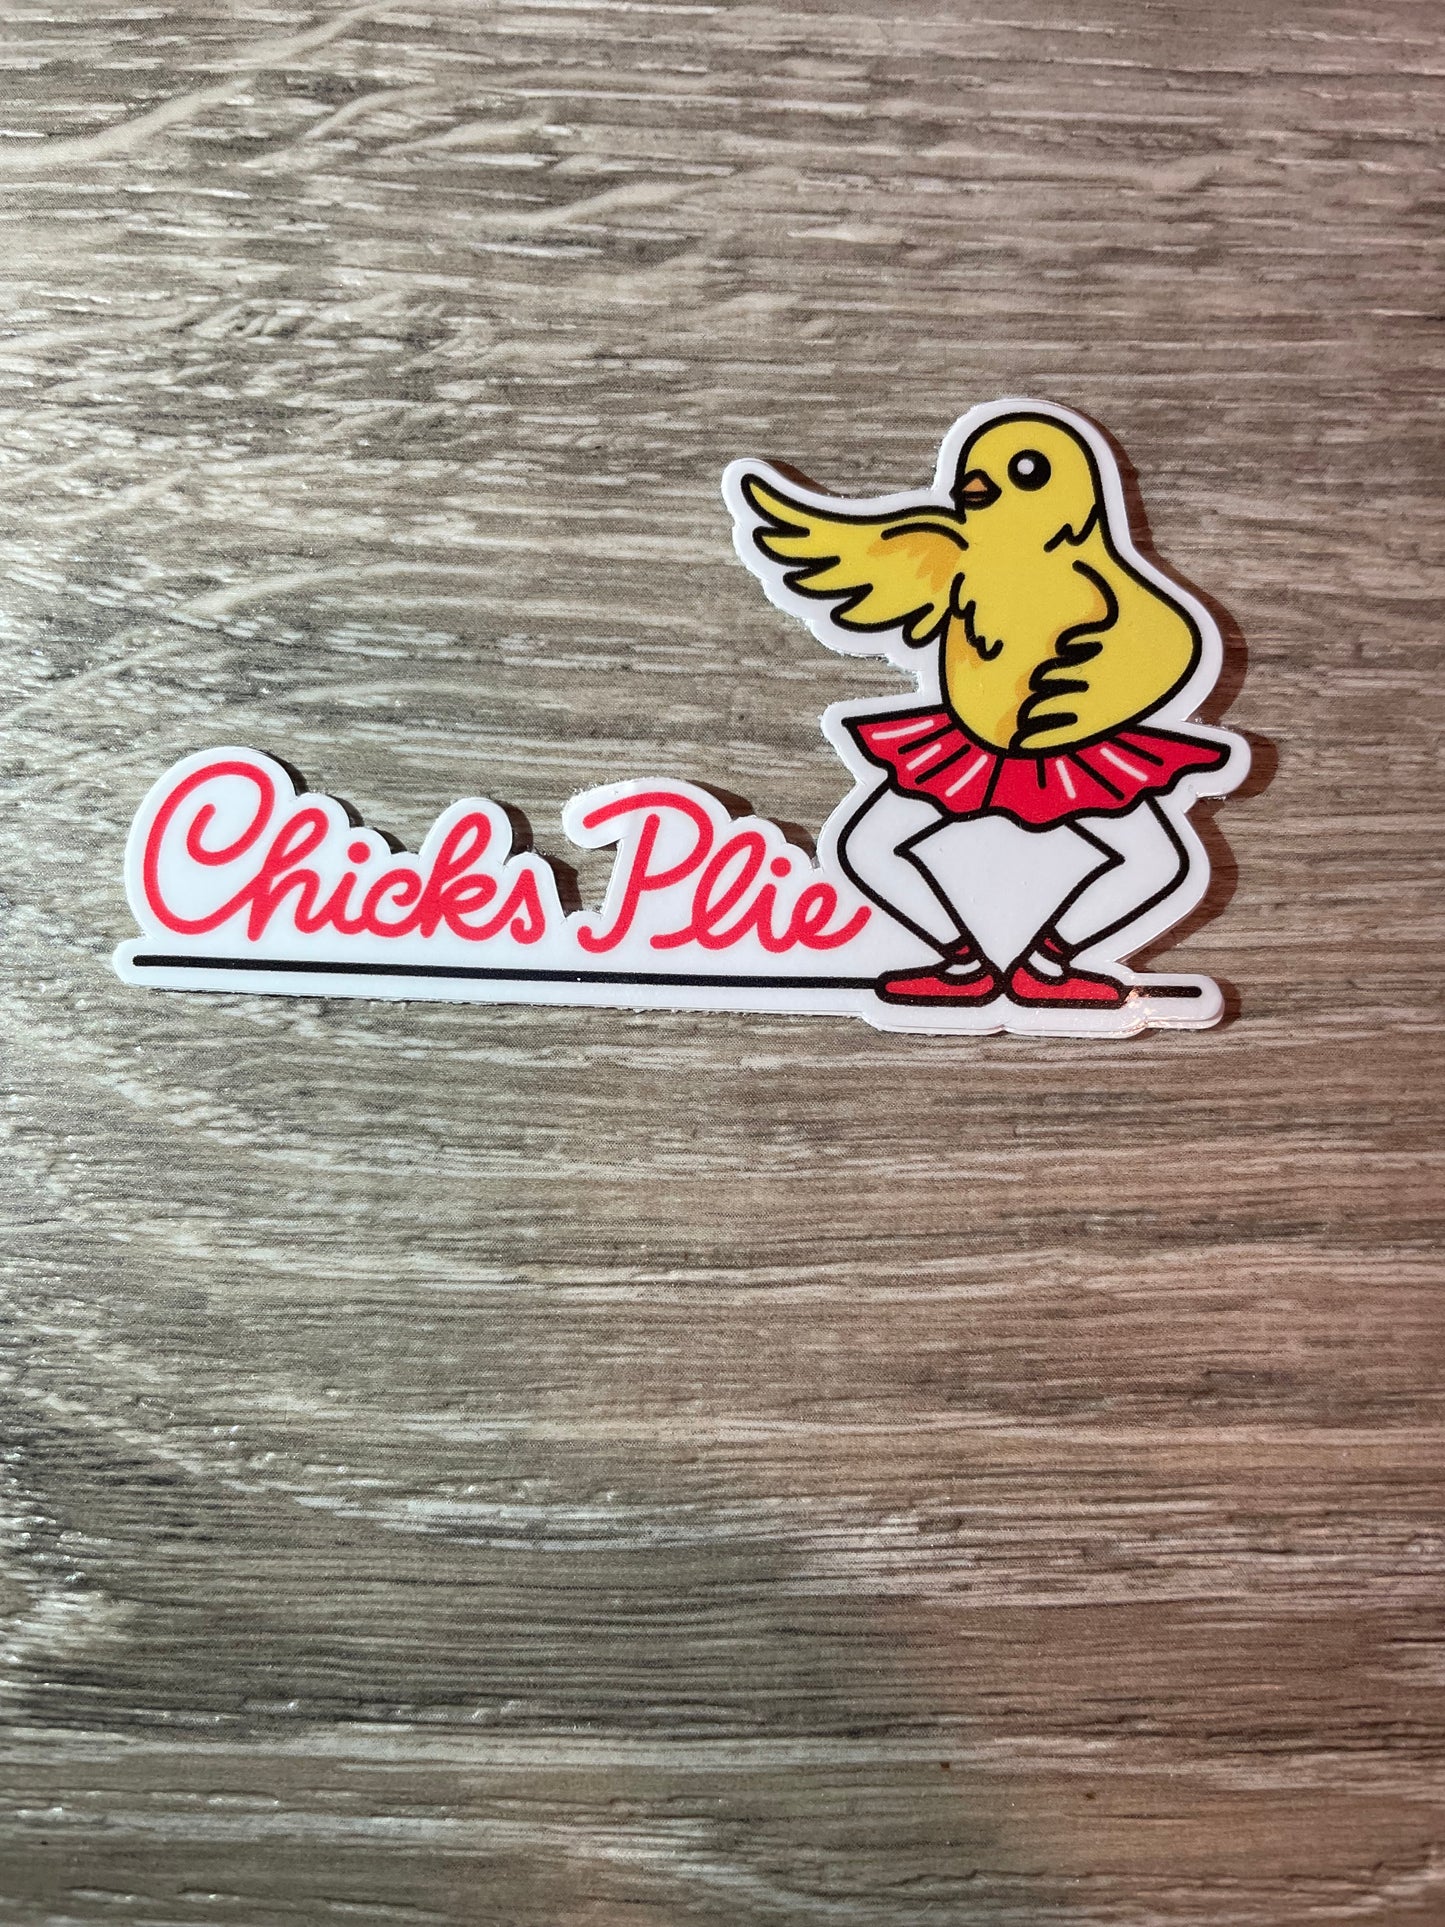 Chicks Plie Vinyl Dance Sticker, 3" x 1.8"